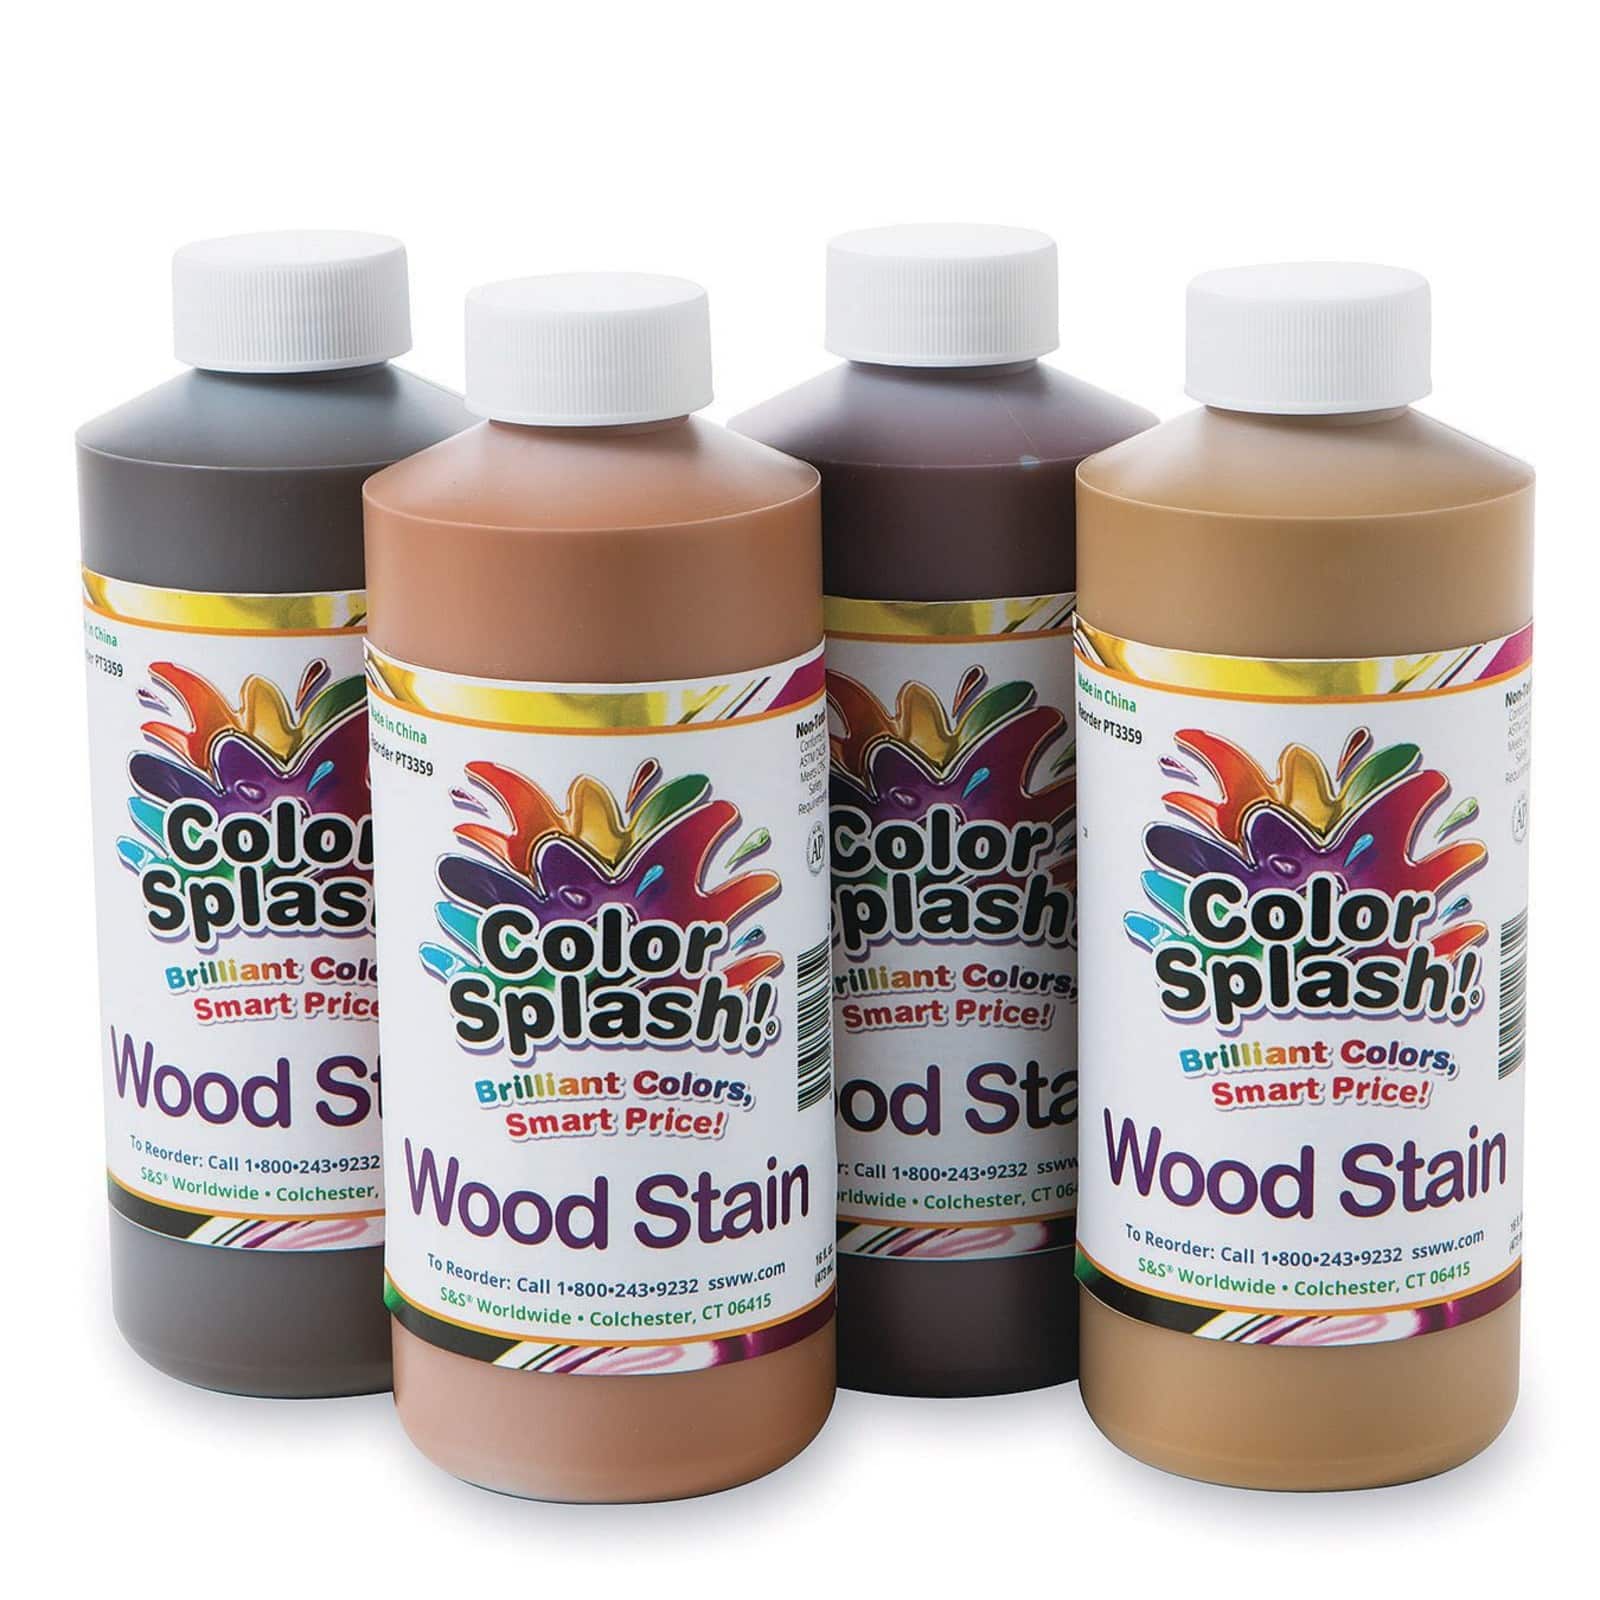 Color Splash! Gel-based Wood Stain, 16-oz. Pack of 4